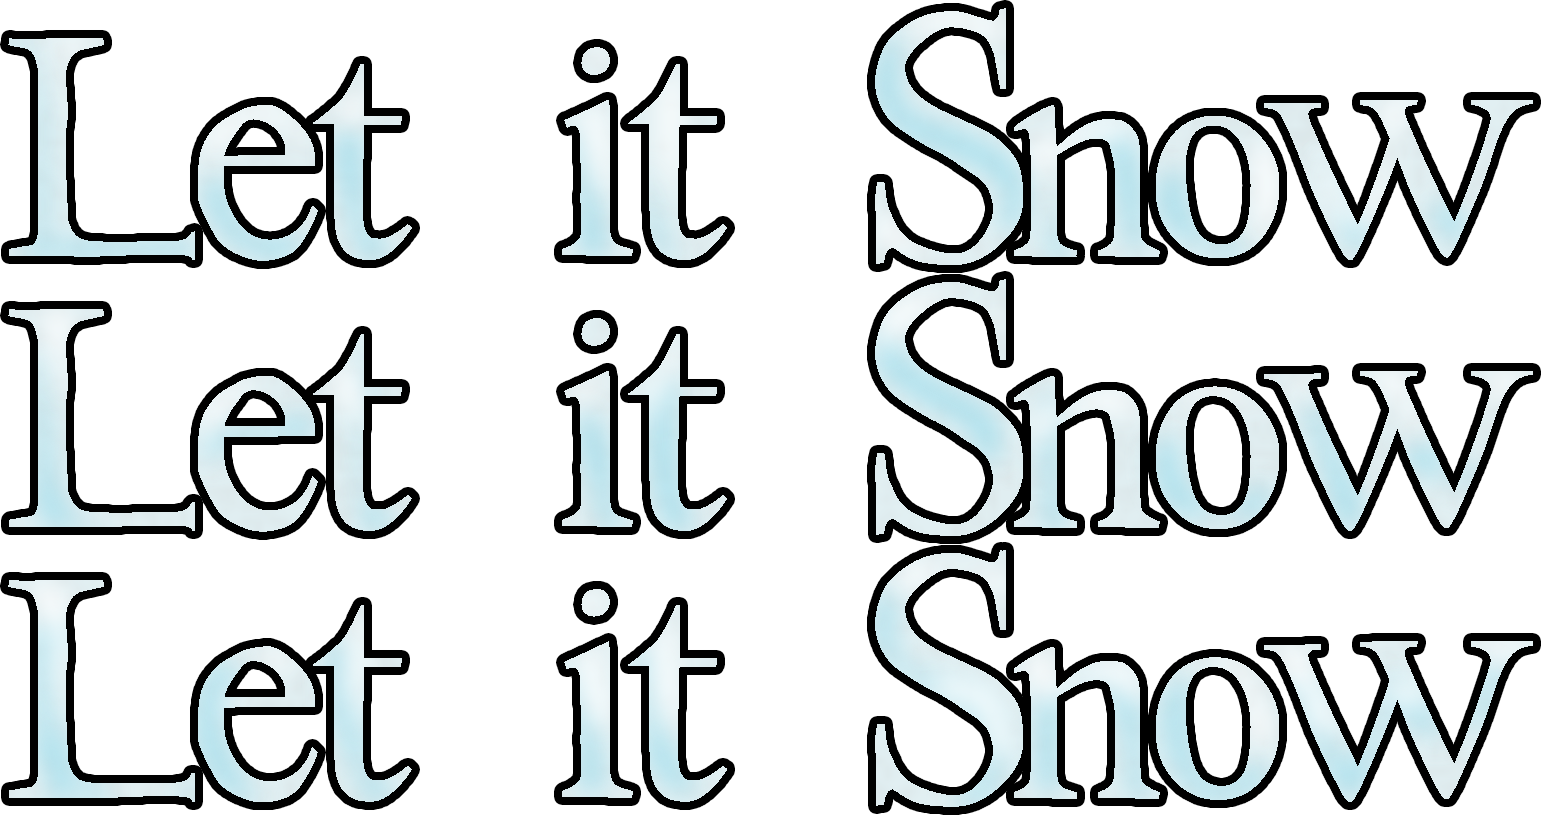 Clever Design Ideas Snow Day Clipart Ms Jones Junction - Let It Snow Let It Snow Let (1541x815)